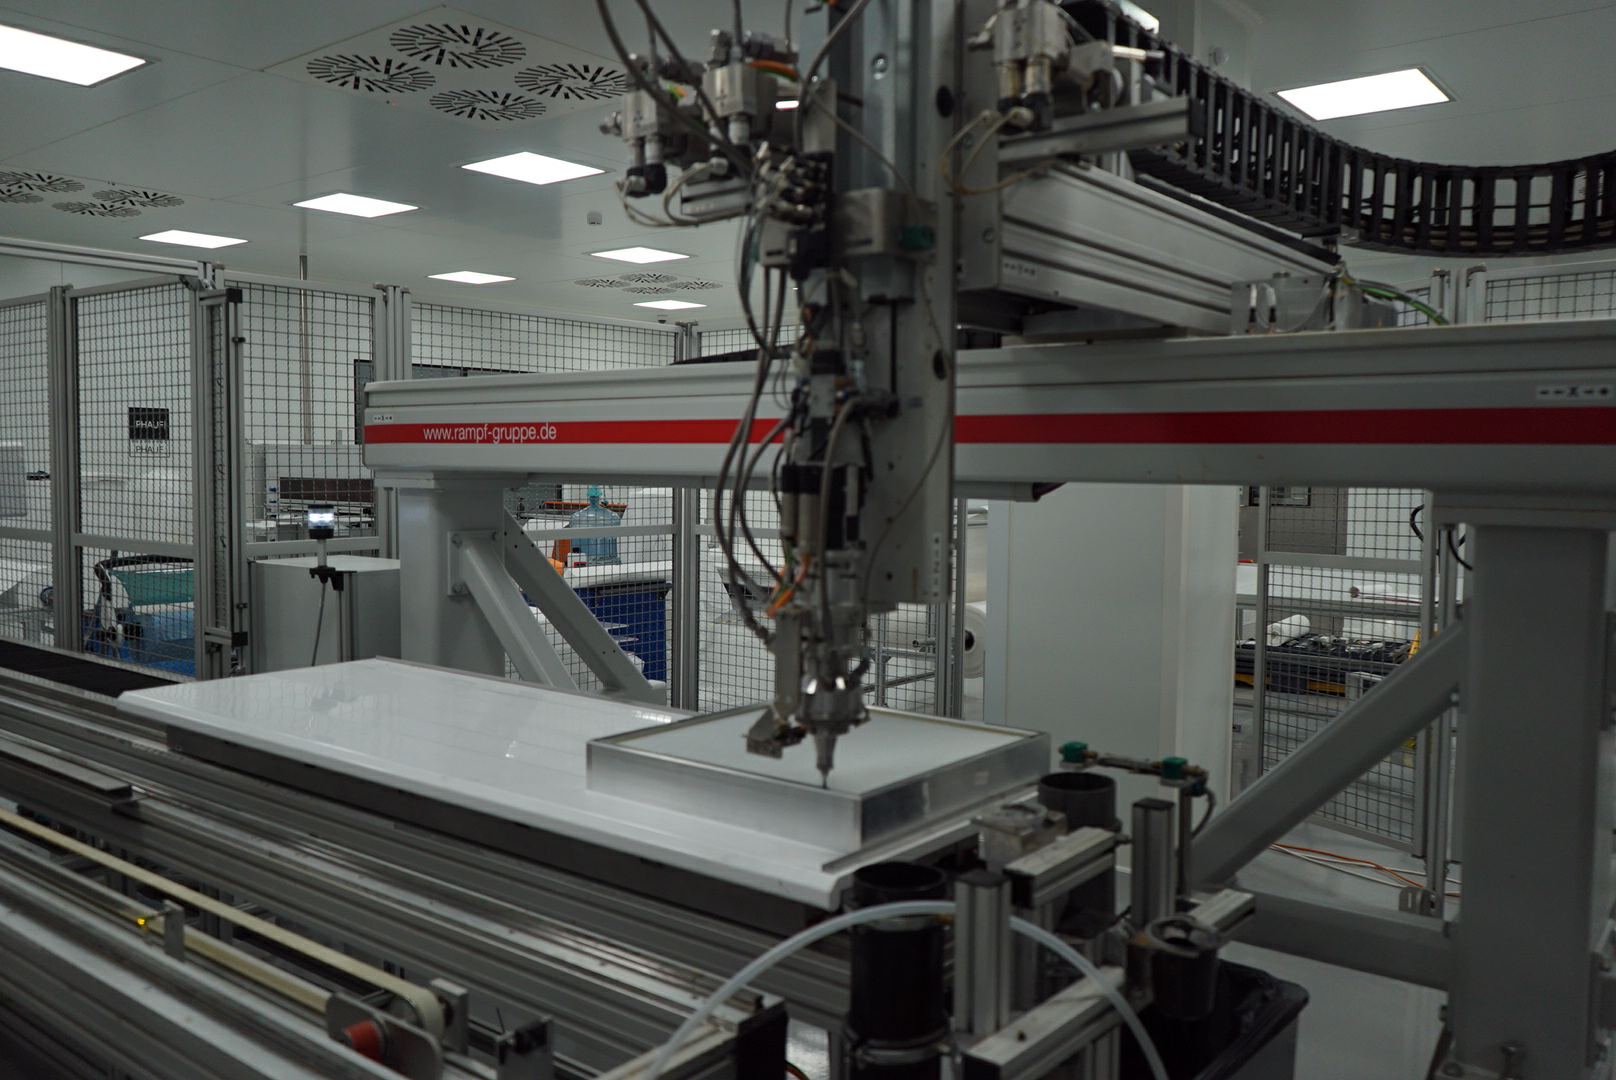 Запущен роботизированный комплекс DR-CNC (RAMPF, GmbH), по нанесению бесшовного полиуретанового уплотнителя. 